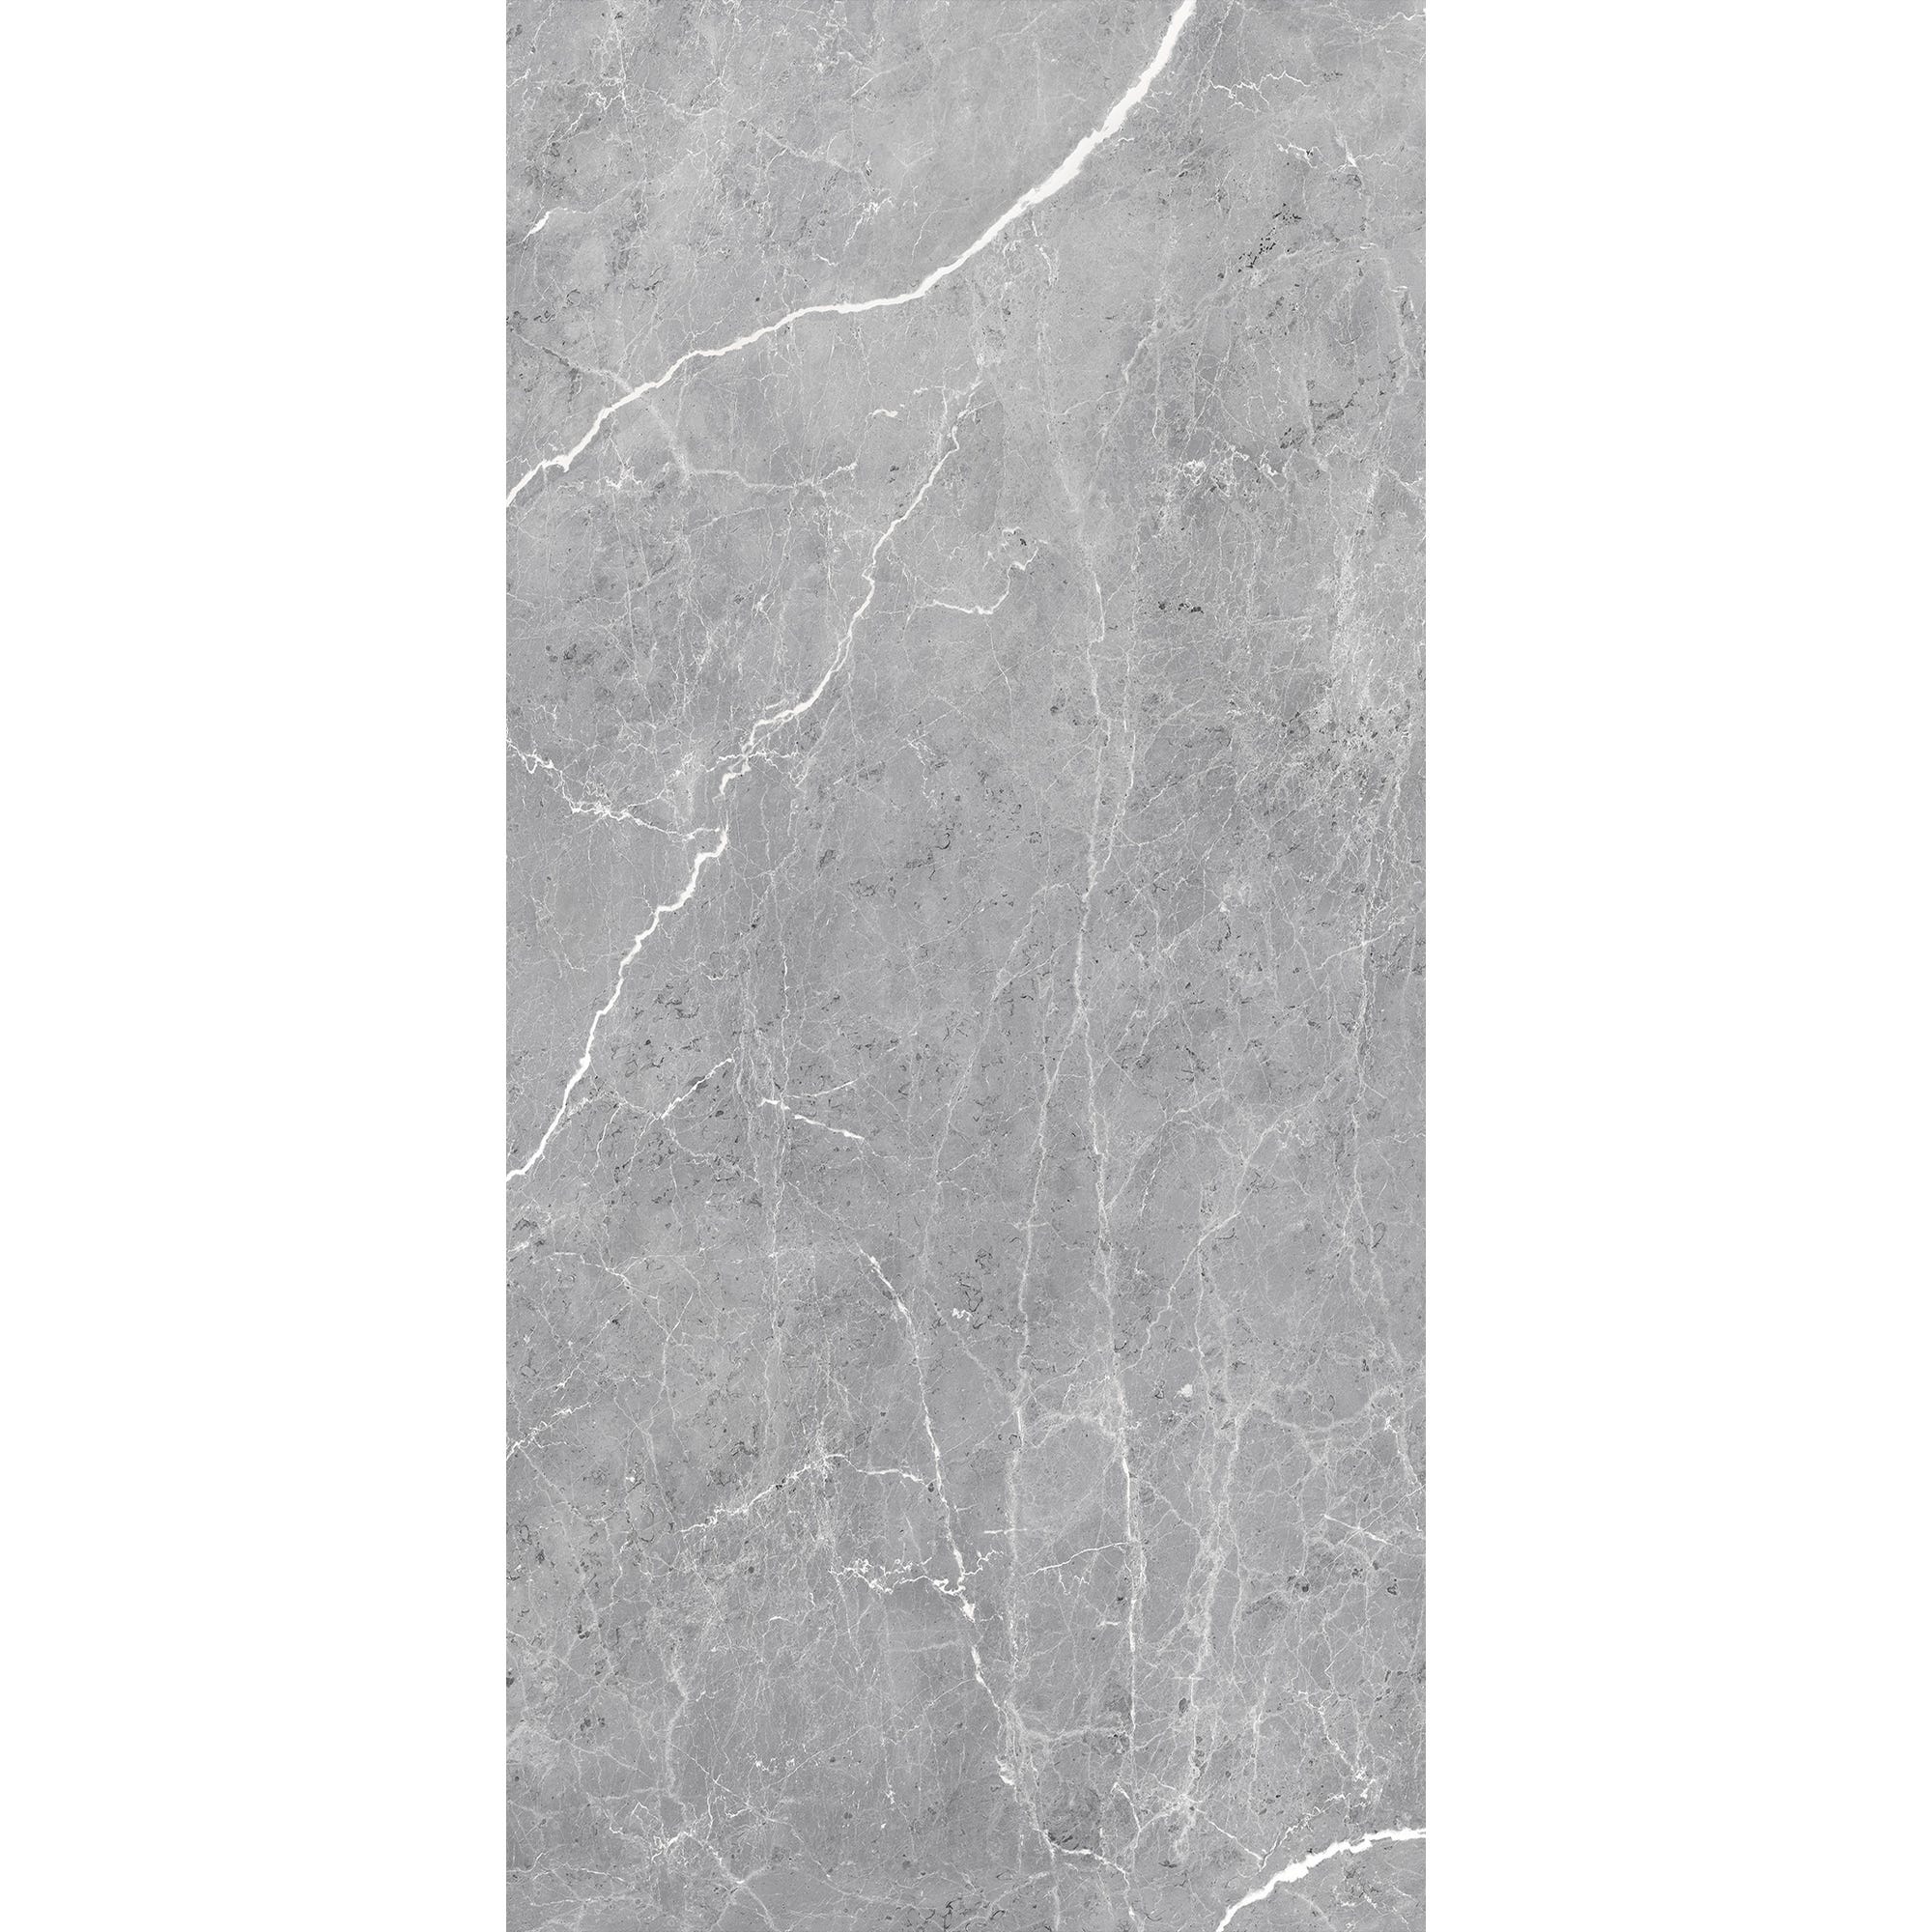 Schulte Pack de 2 panneaux muraux 100 x 210 cm, revêtement pour douche et salle de bains, DécoDesign SOFTTOUCH, marbre gris profond 1